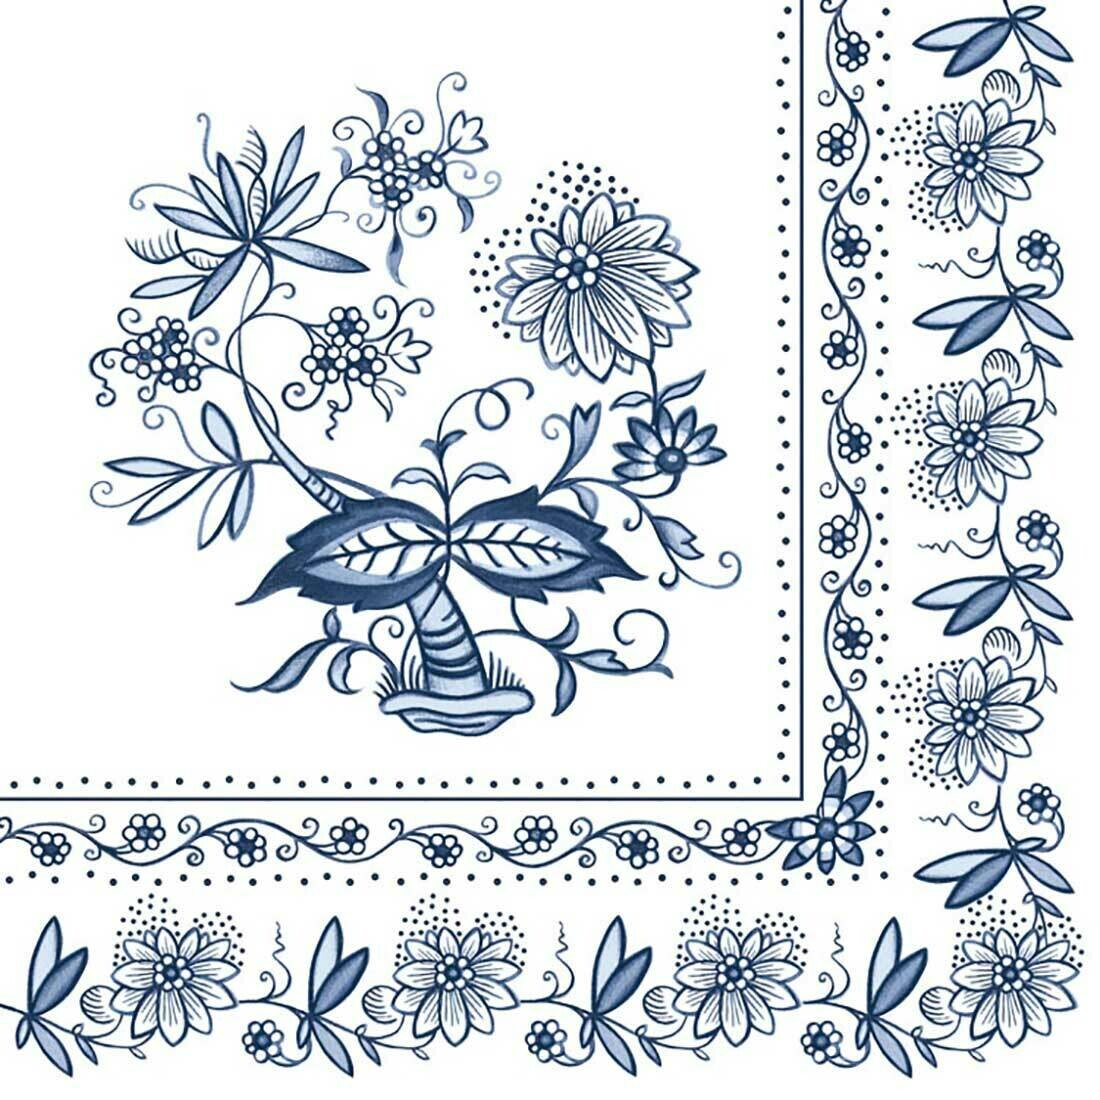 Decoupage Paper Napkins - Floral - Blue Onion (1 Sheet)